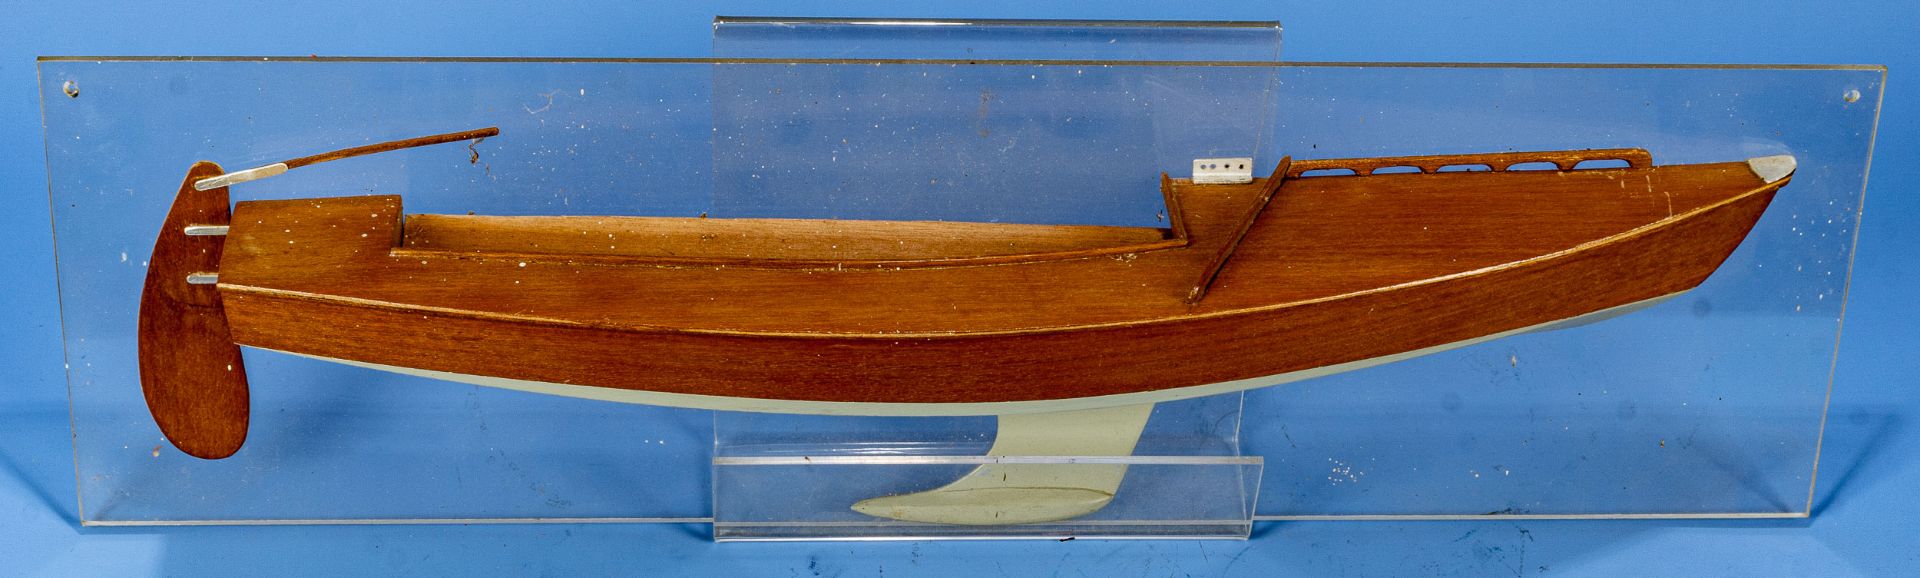 Halbmodell eines Segelschiffes, auf Fiberglas montiertes, lackiertes und furniertes Holzmodell; Pla - Image 2 of 4